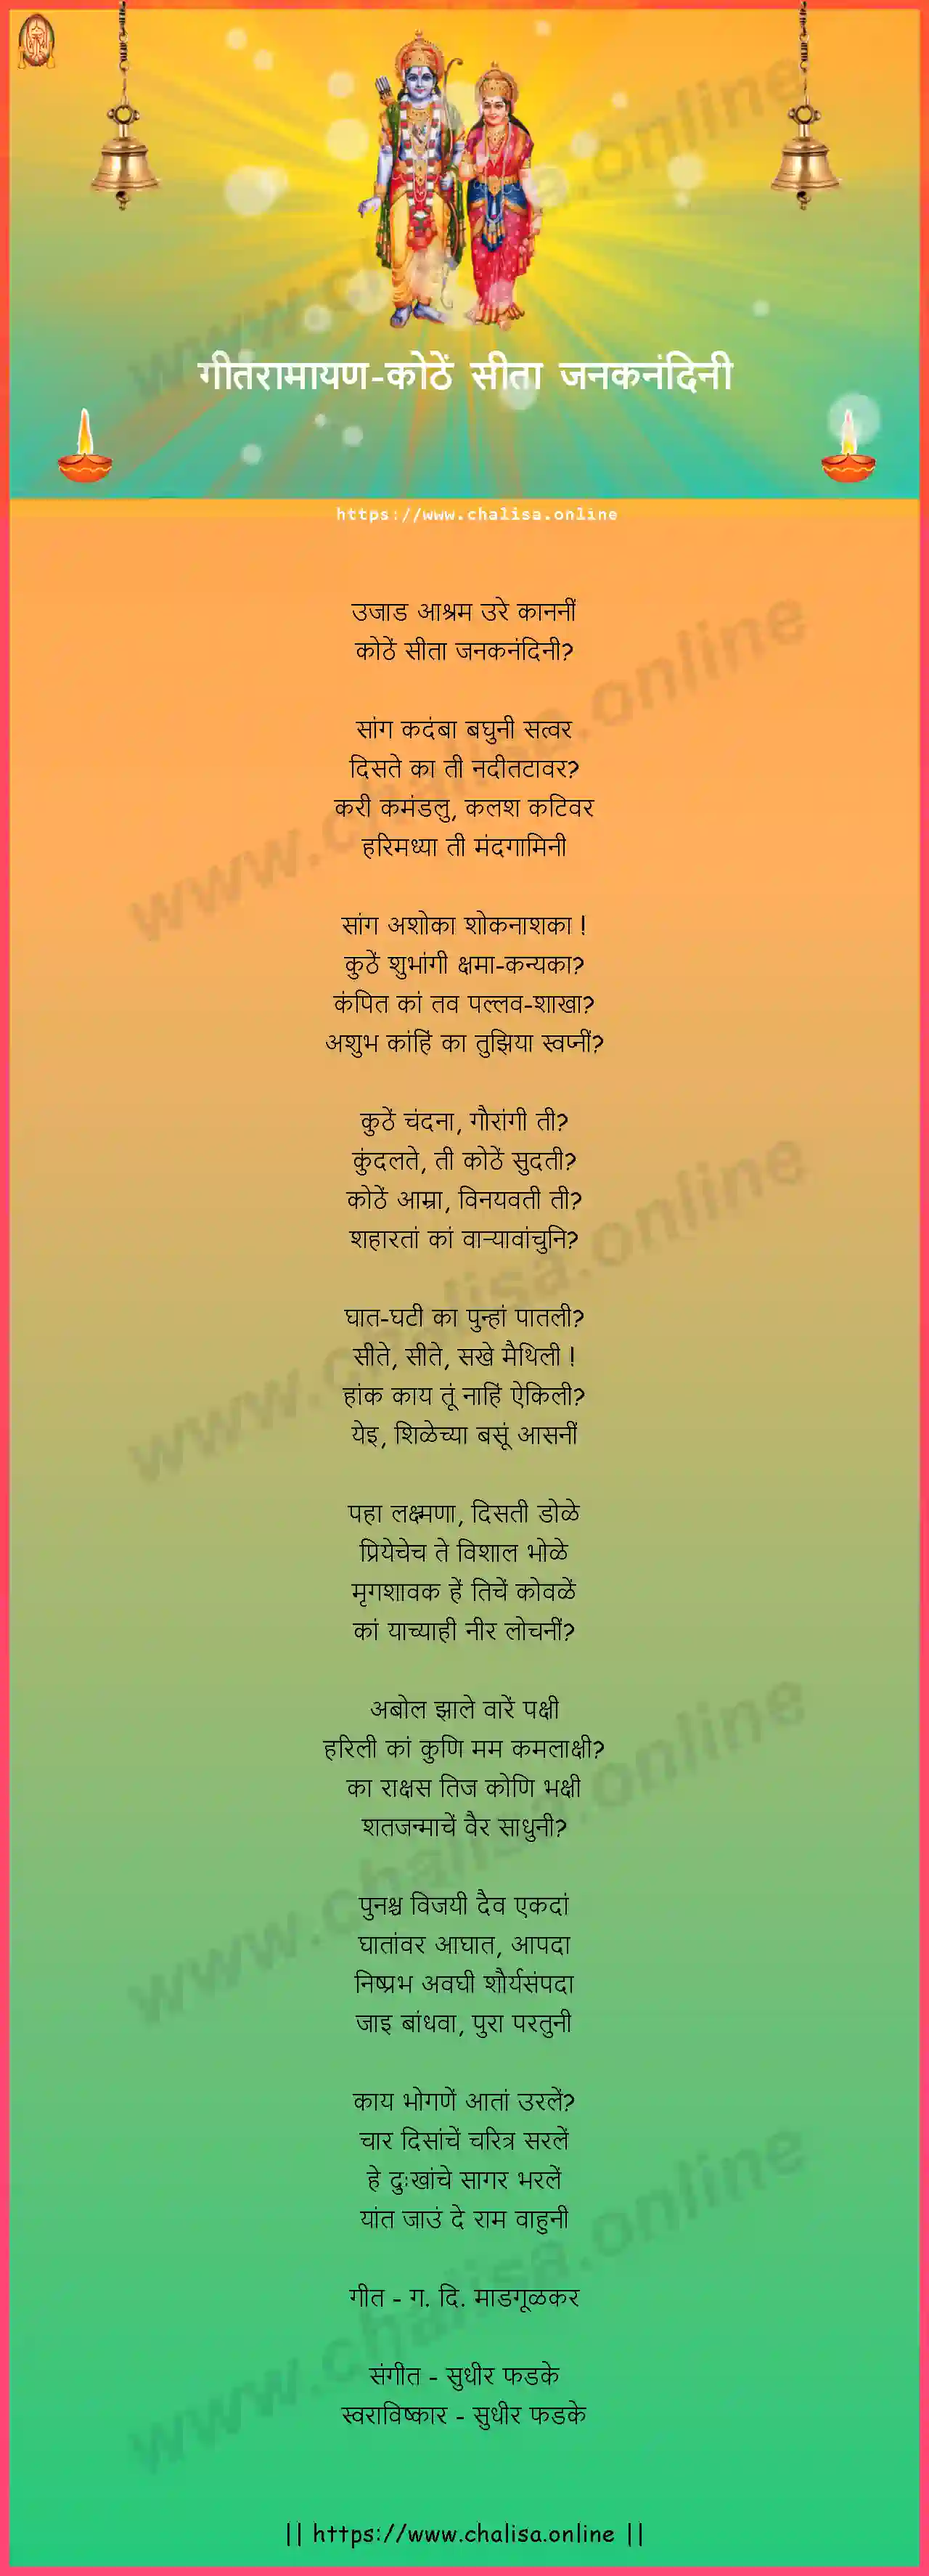 kothe-sita-jank-nandini-geet-ramayan-marathi-lyrics-download